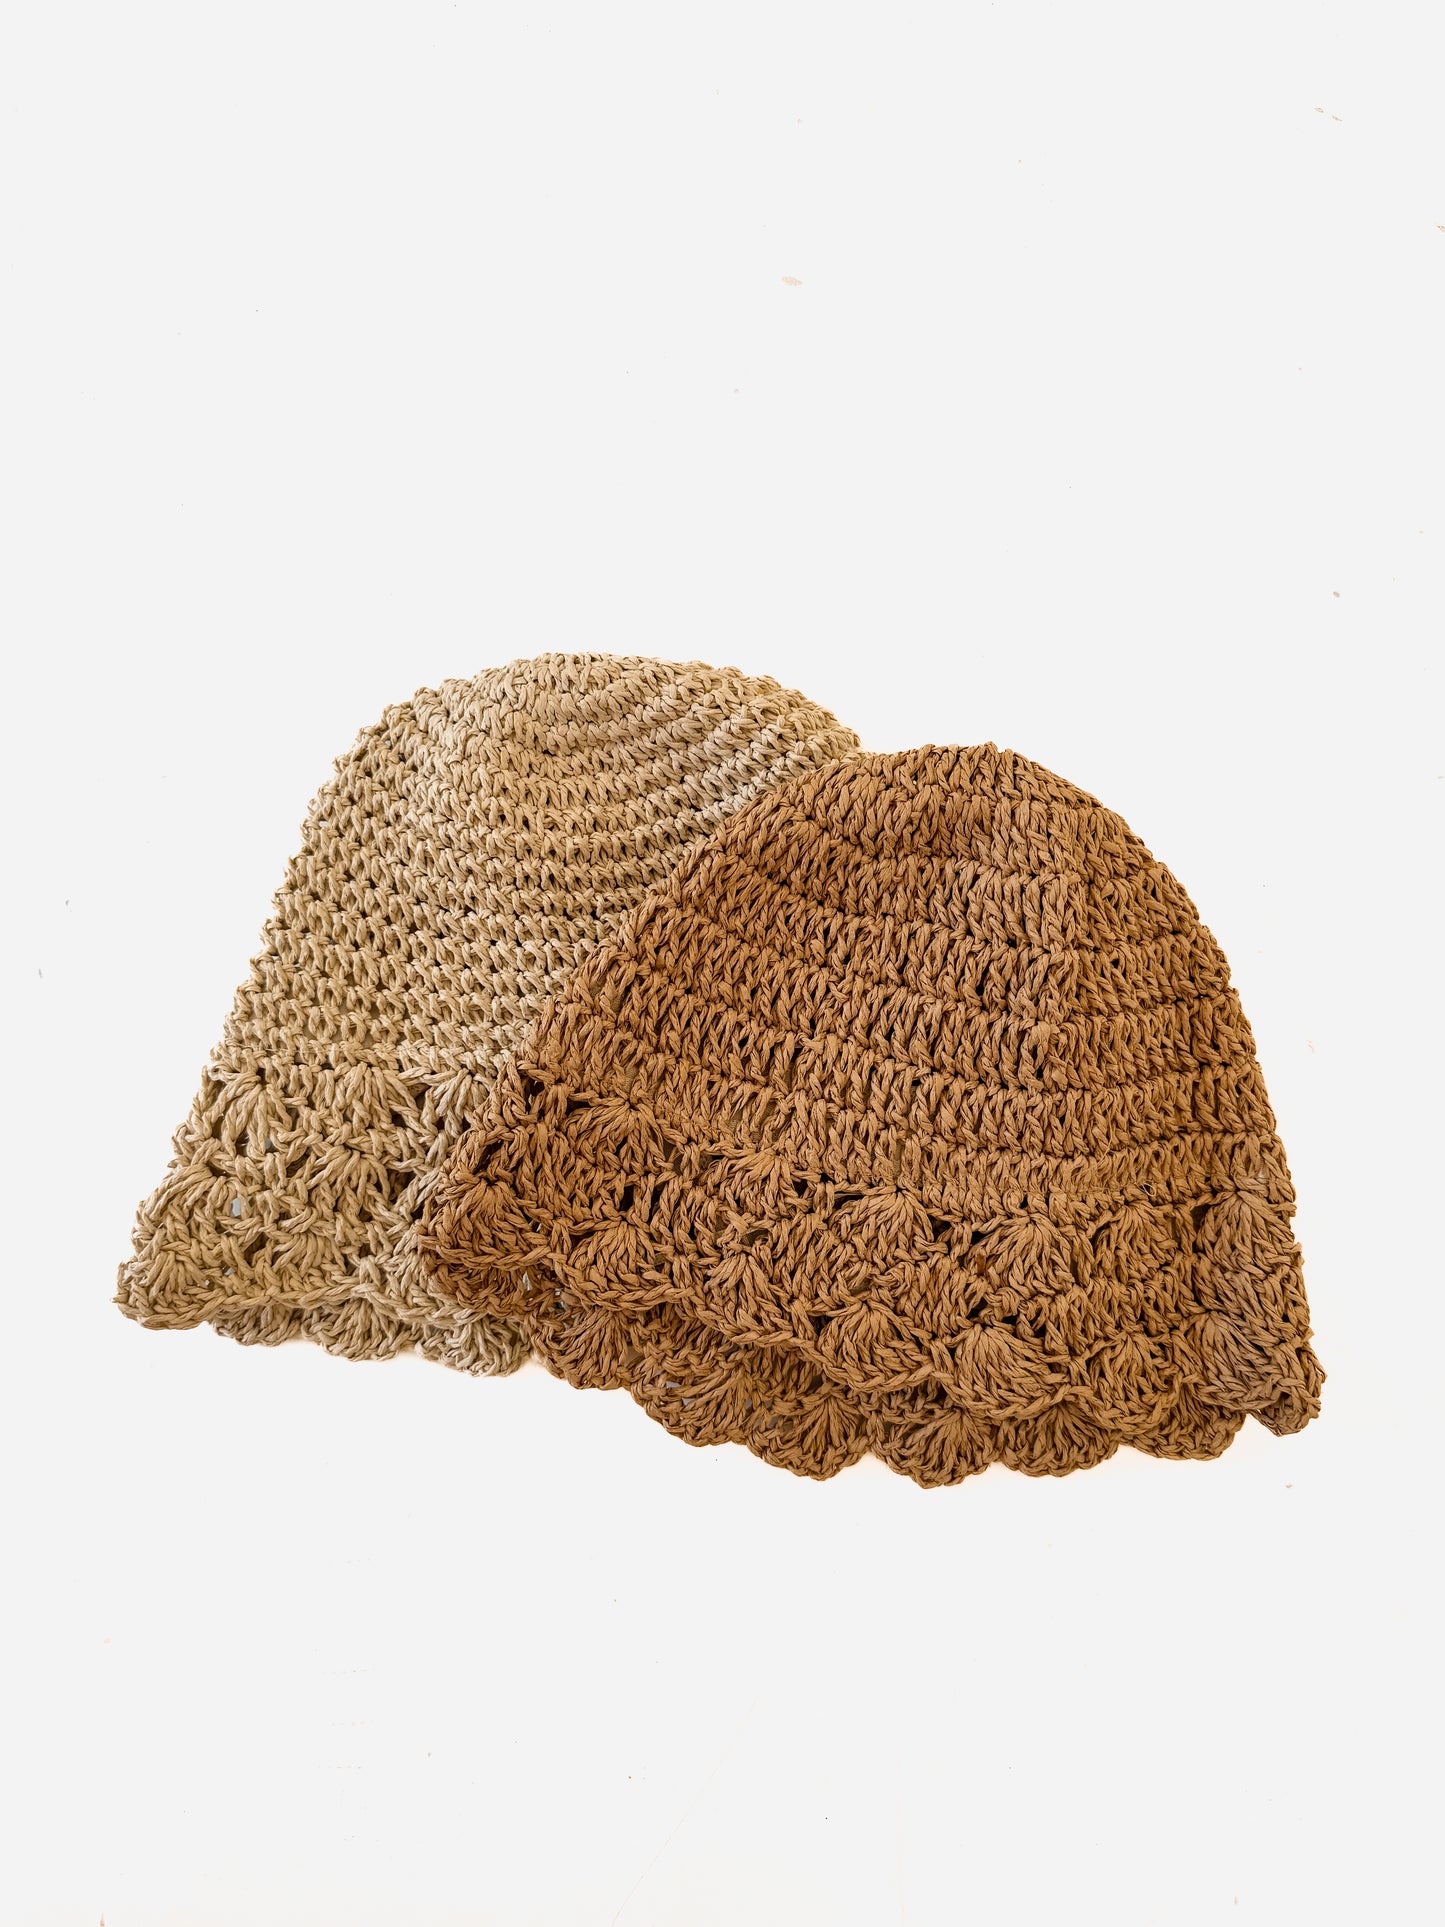 Crochet straw bucket hat light natural